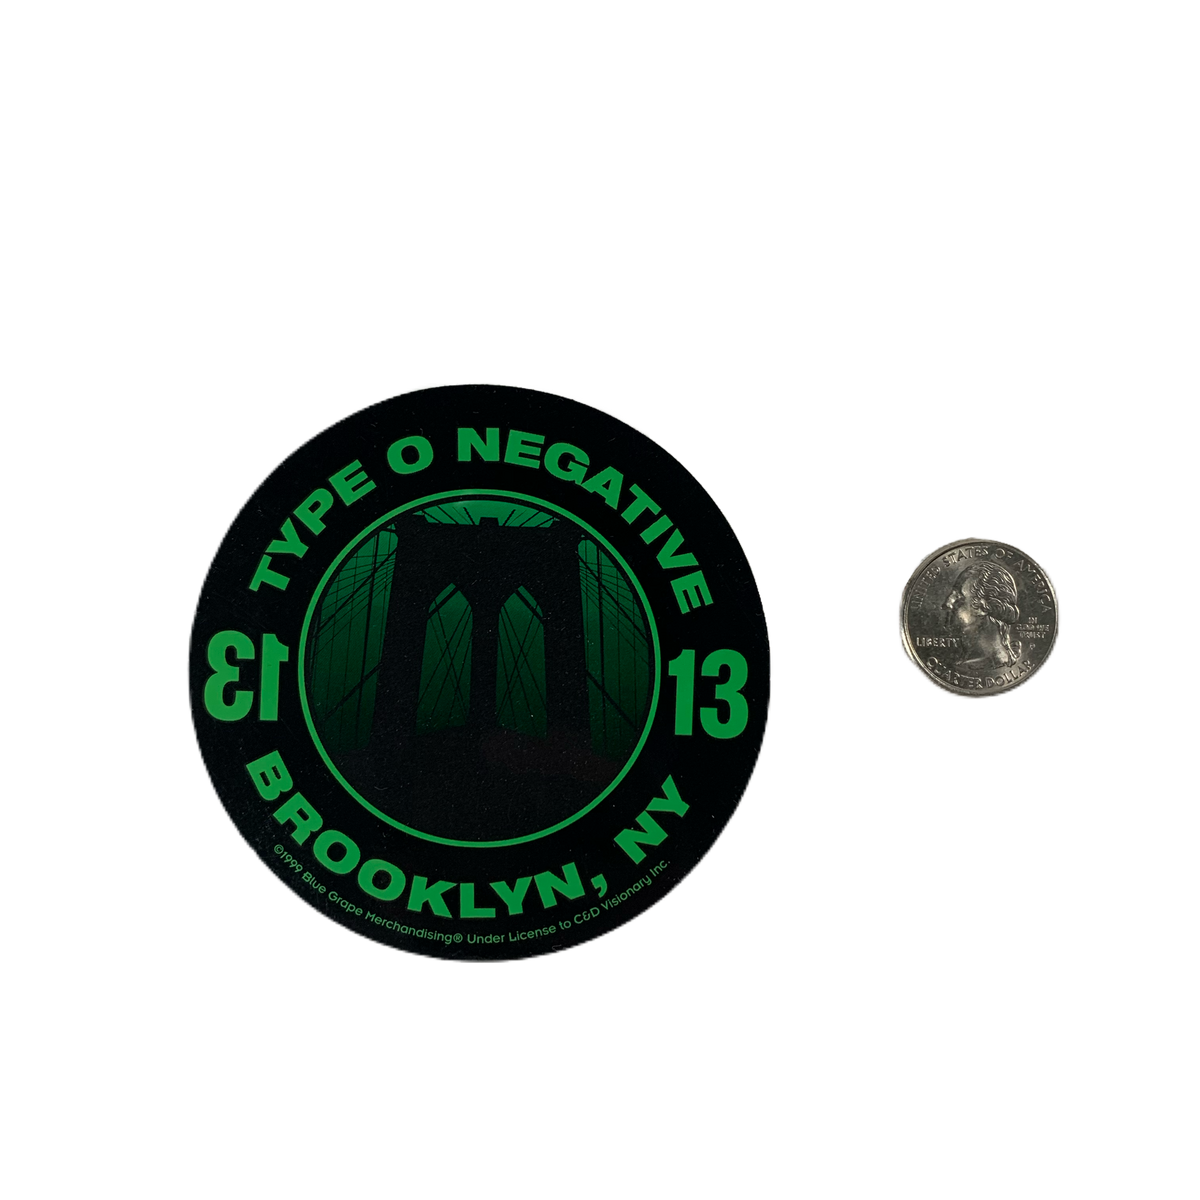 Vintage Type O Negative “Brooklyn, NY” Sticker Lot #1 - jointcustodydc